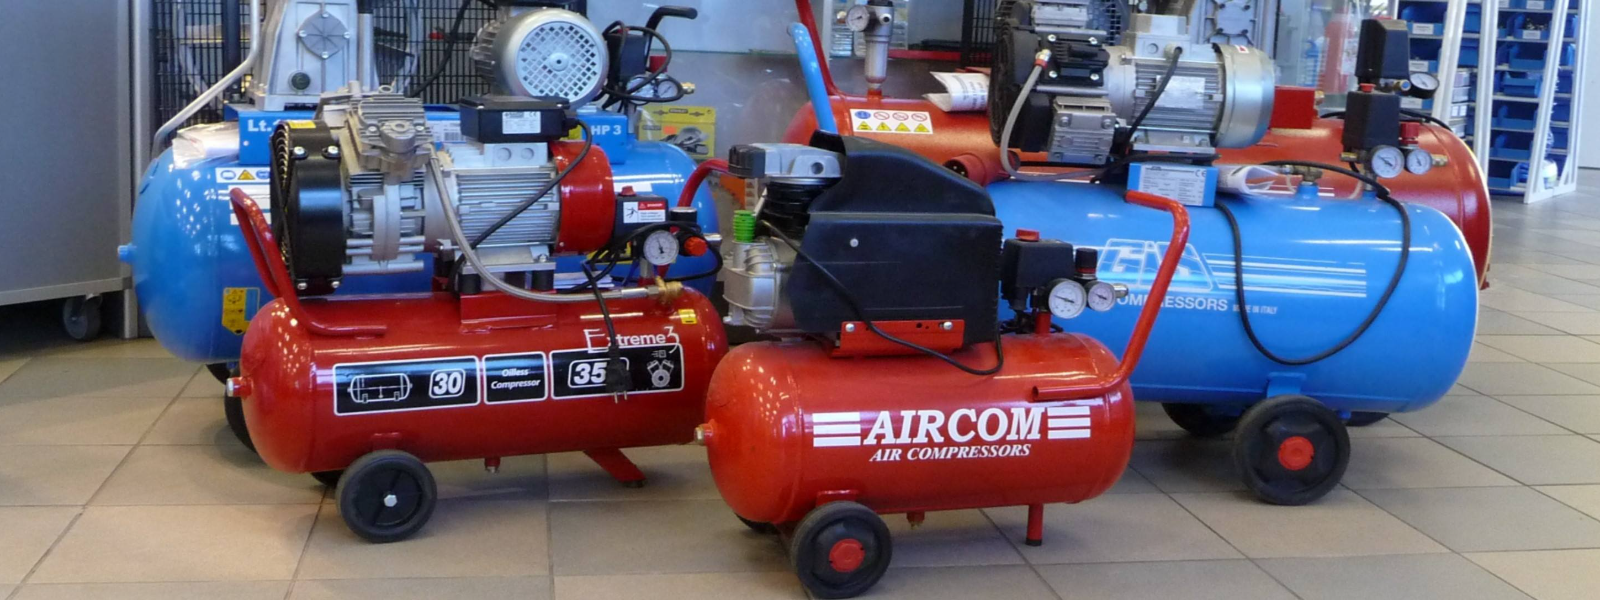 AIRCOM OÜ - Aircom on usaldusväärne ettevõte, mis pakub parima kvaliteedi ja hinnaga tööriistu ning seadmeid nii alg...